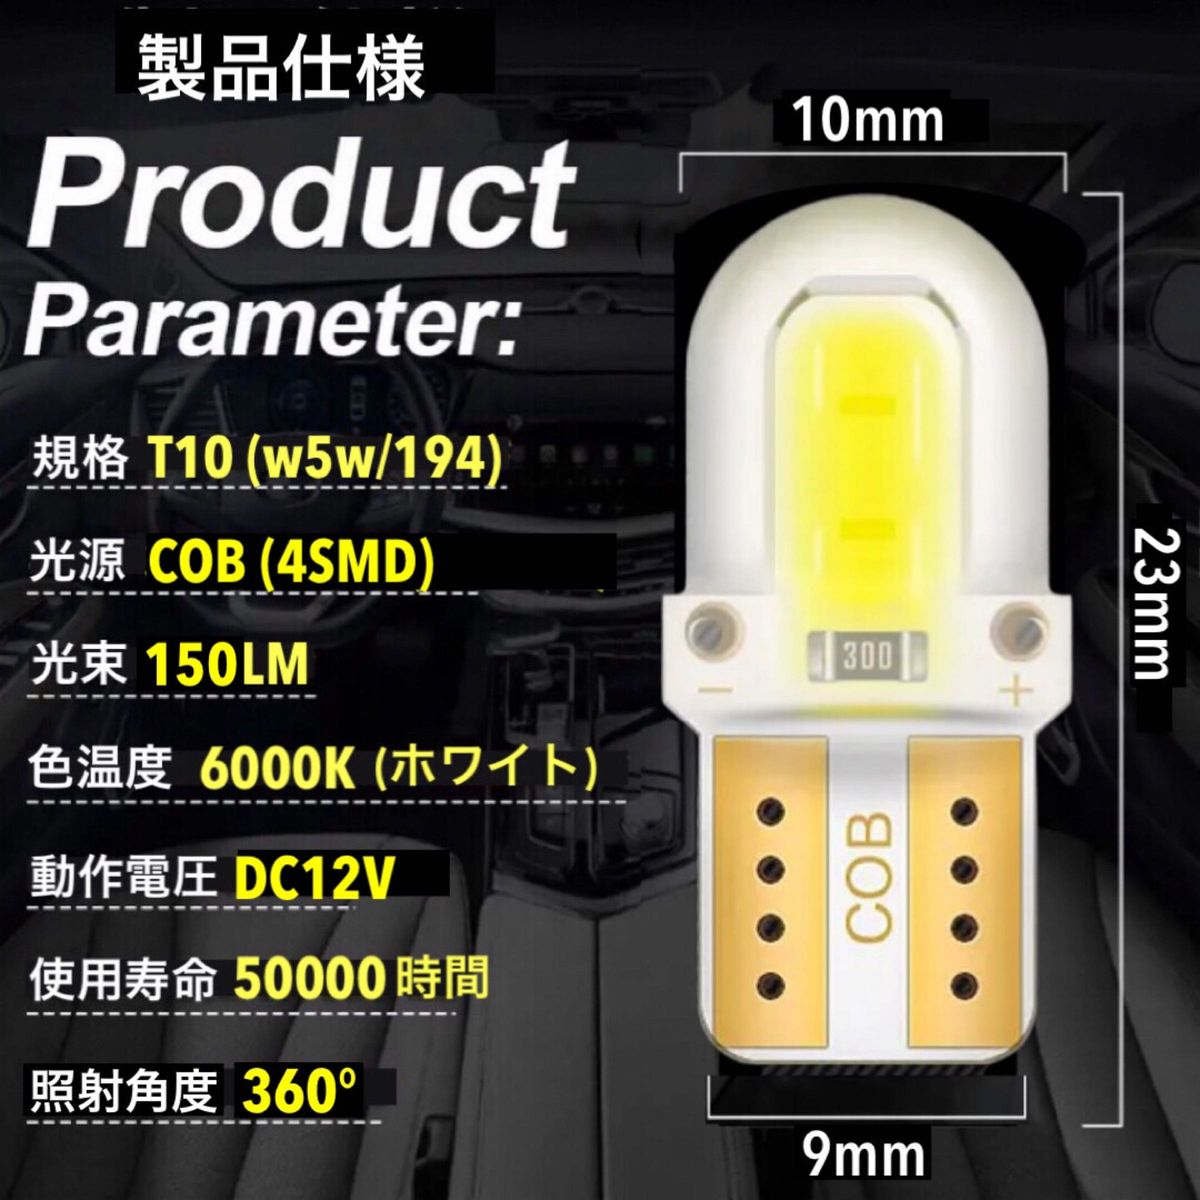 T10 T16 LEDバルブ 20個 12V 4SMD ホワイト ルームランプ ナンバー灯 ポジション球 高輝度 明るい 爆光 